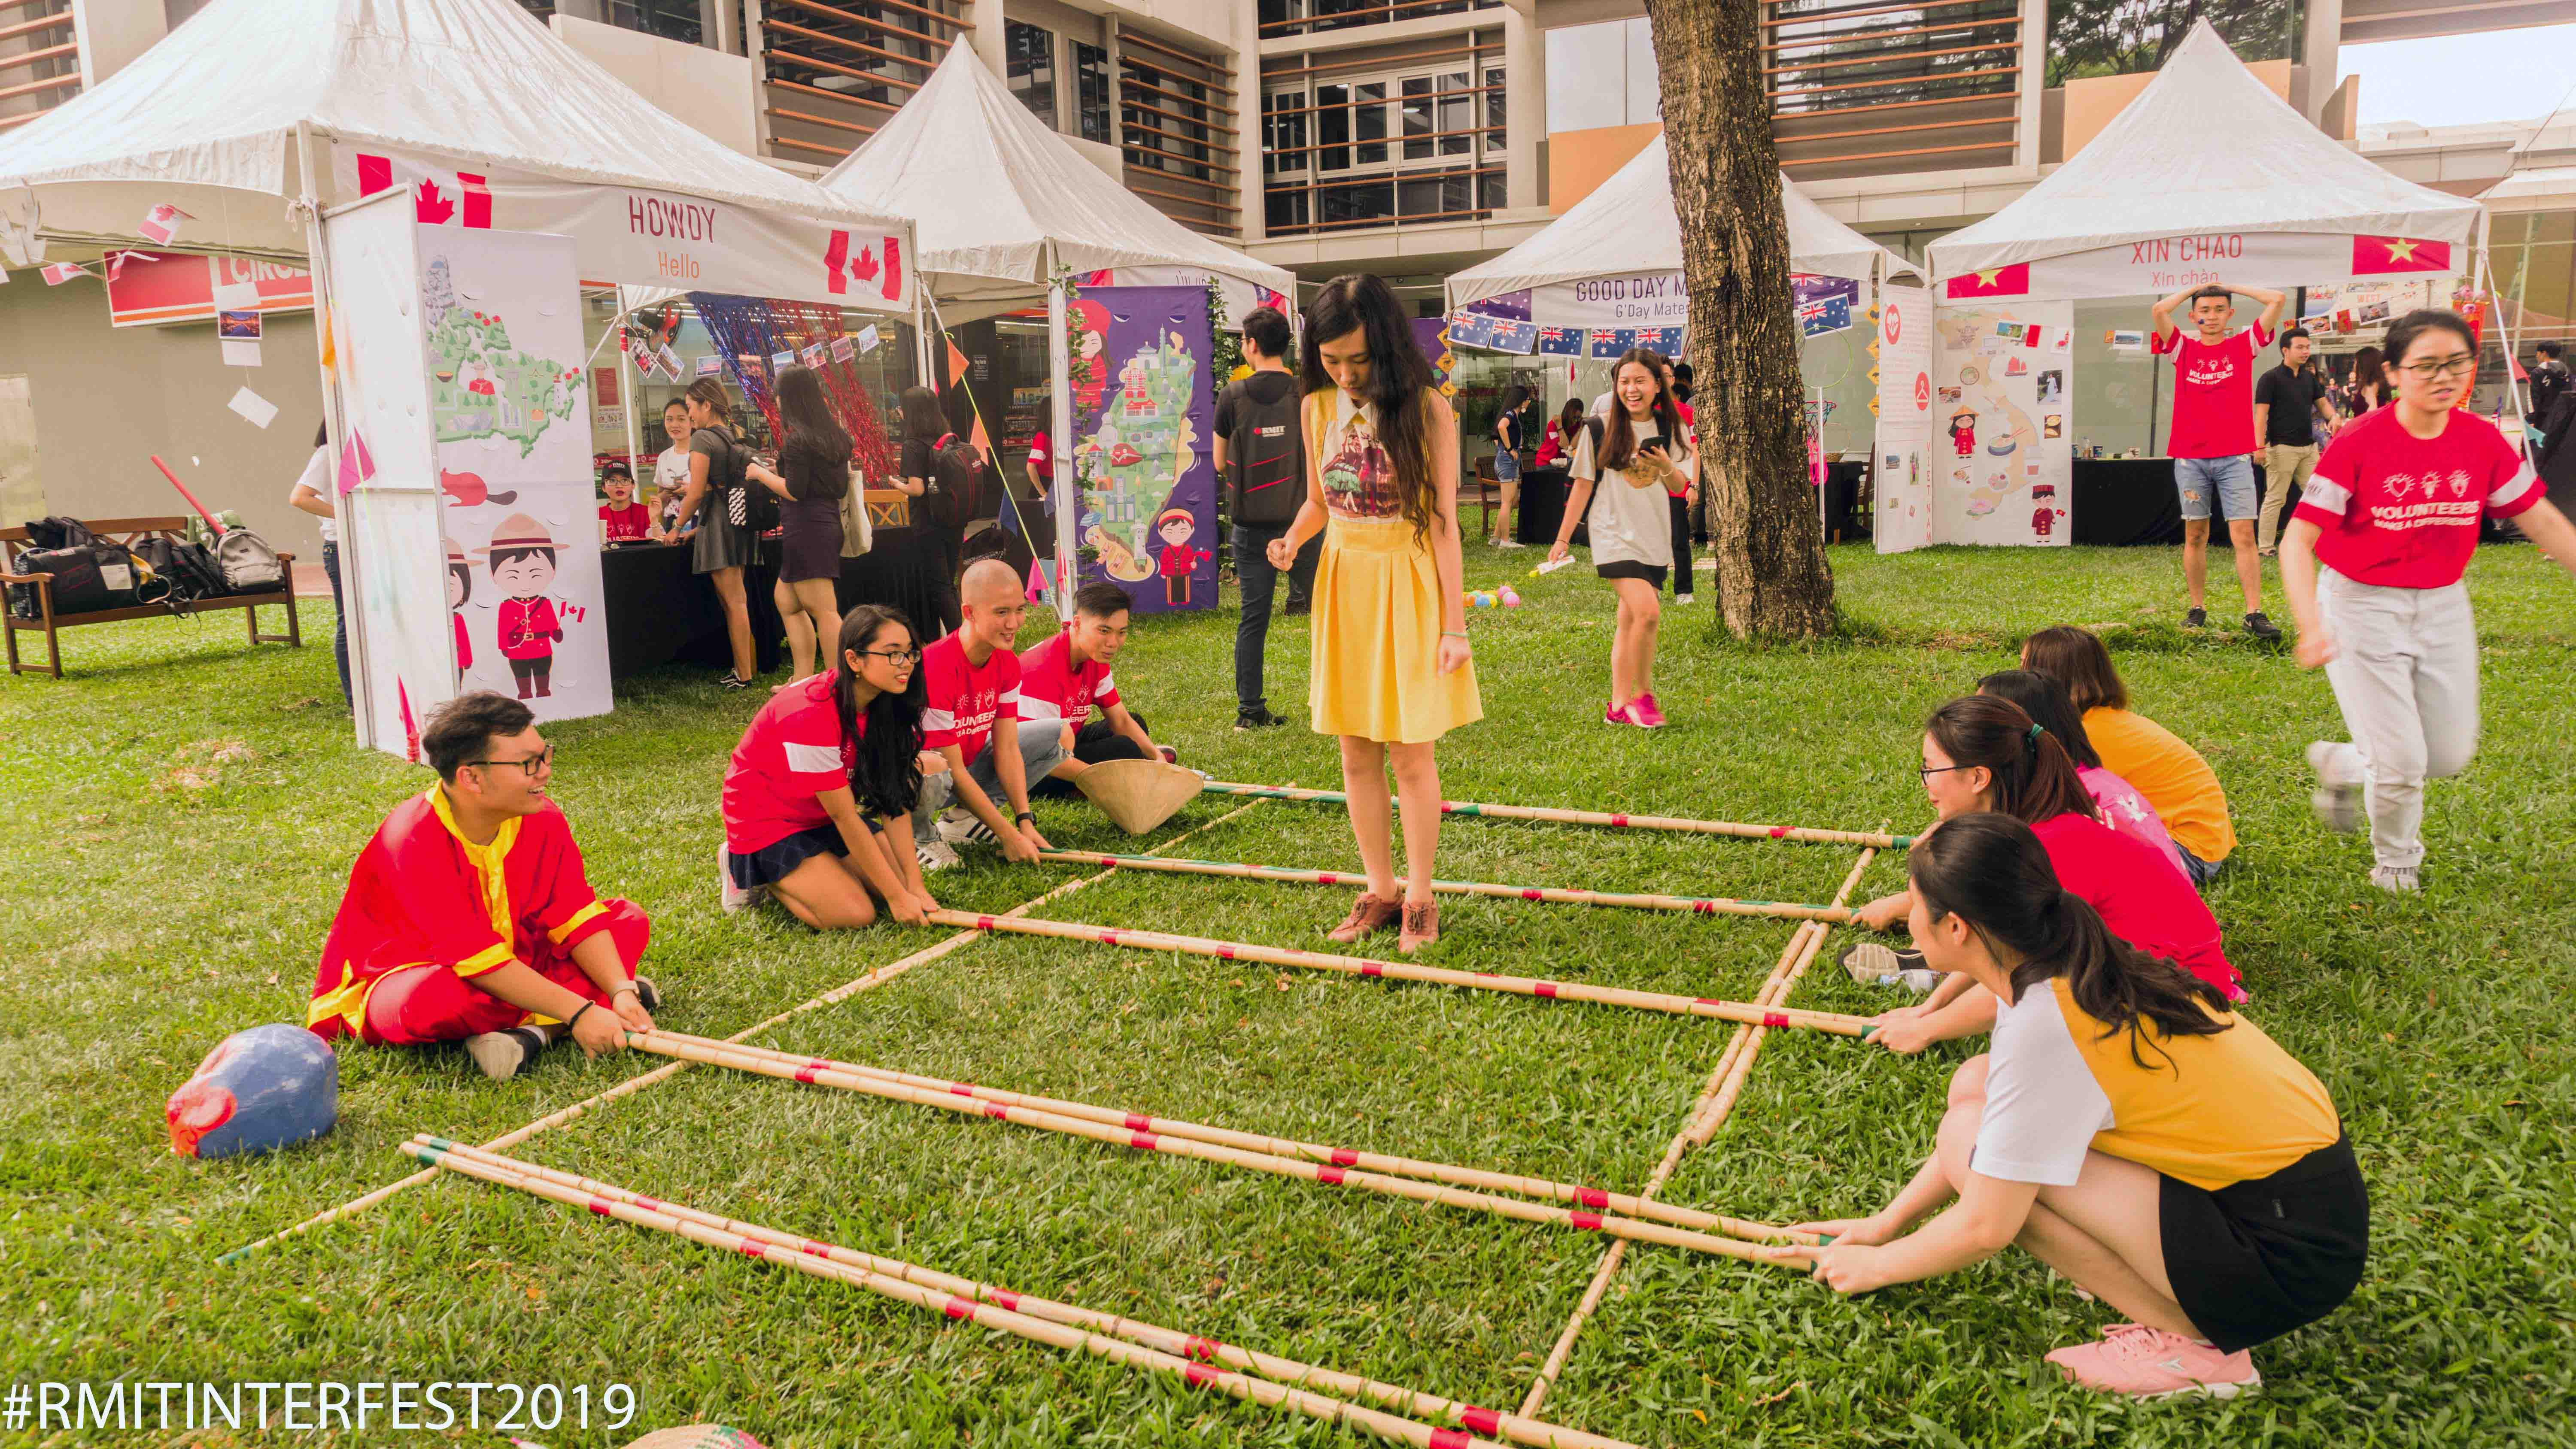 Điệu nhảy sạp truyền thống Việt Nam là hoạt động được các bạn sinh viên yêu thích tại Ngày hội Đa văn hóa.